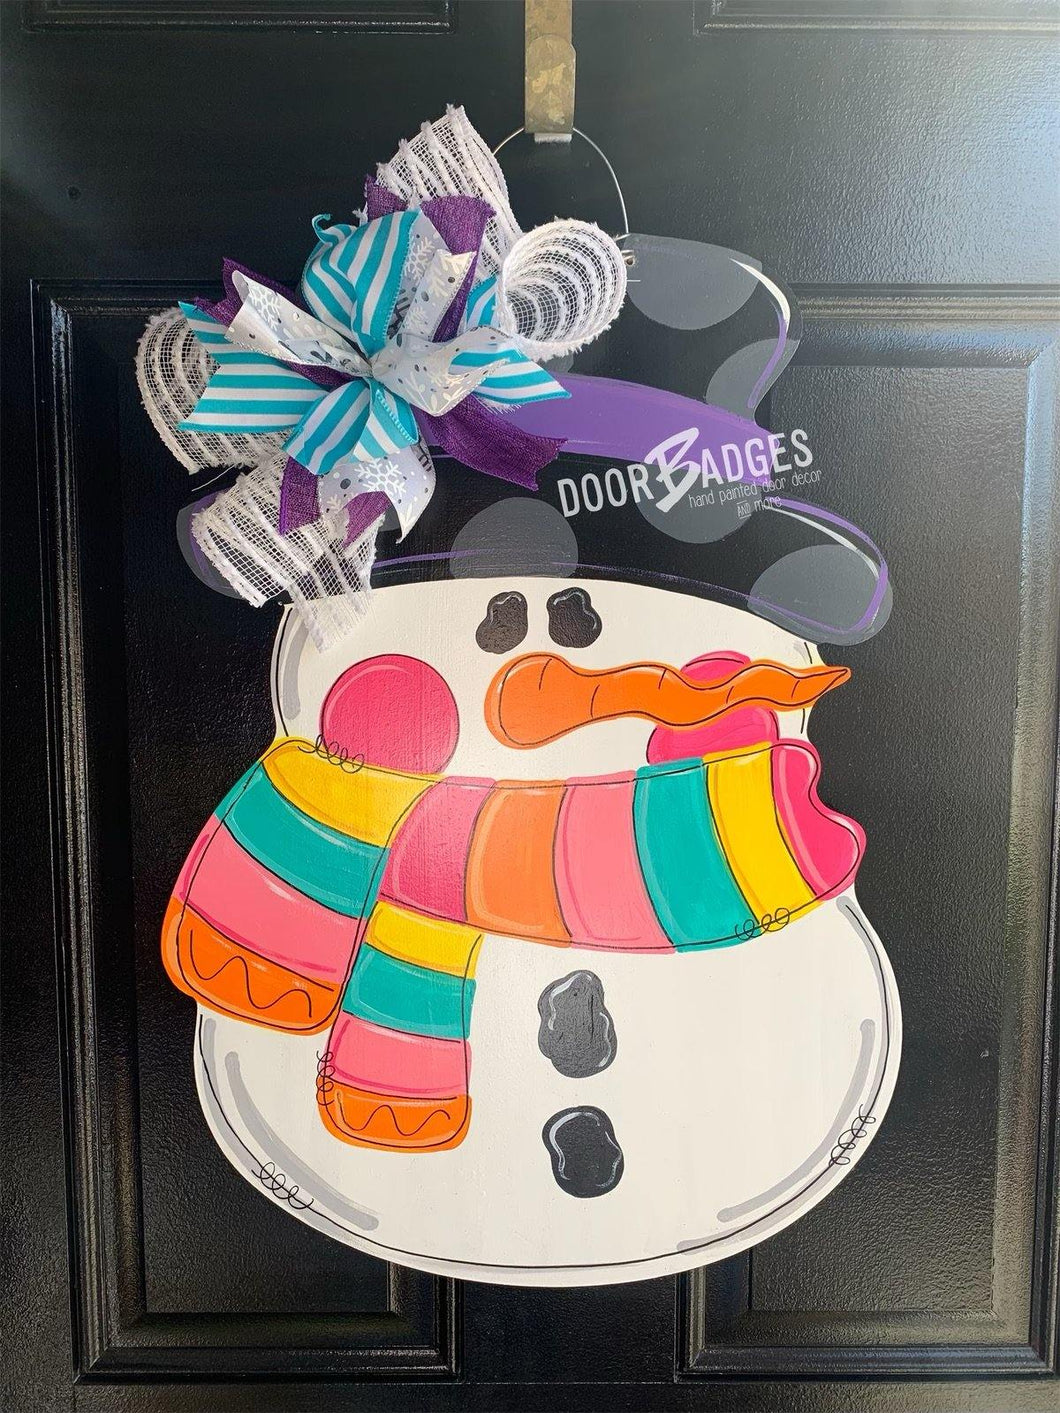 Snowman Door Hanger - Colorful Winter Door Decoration - DoorBadges